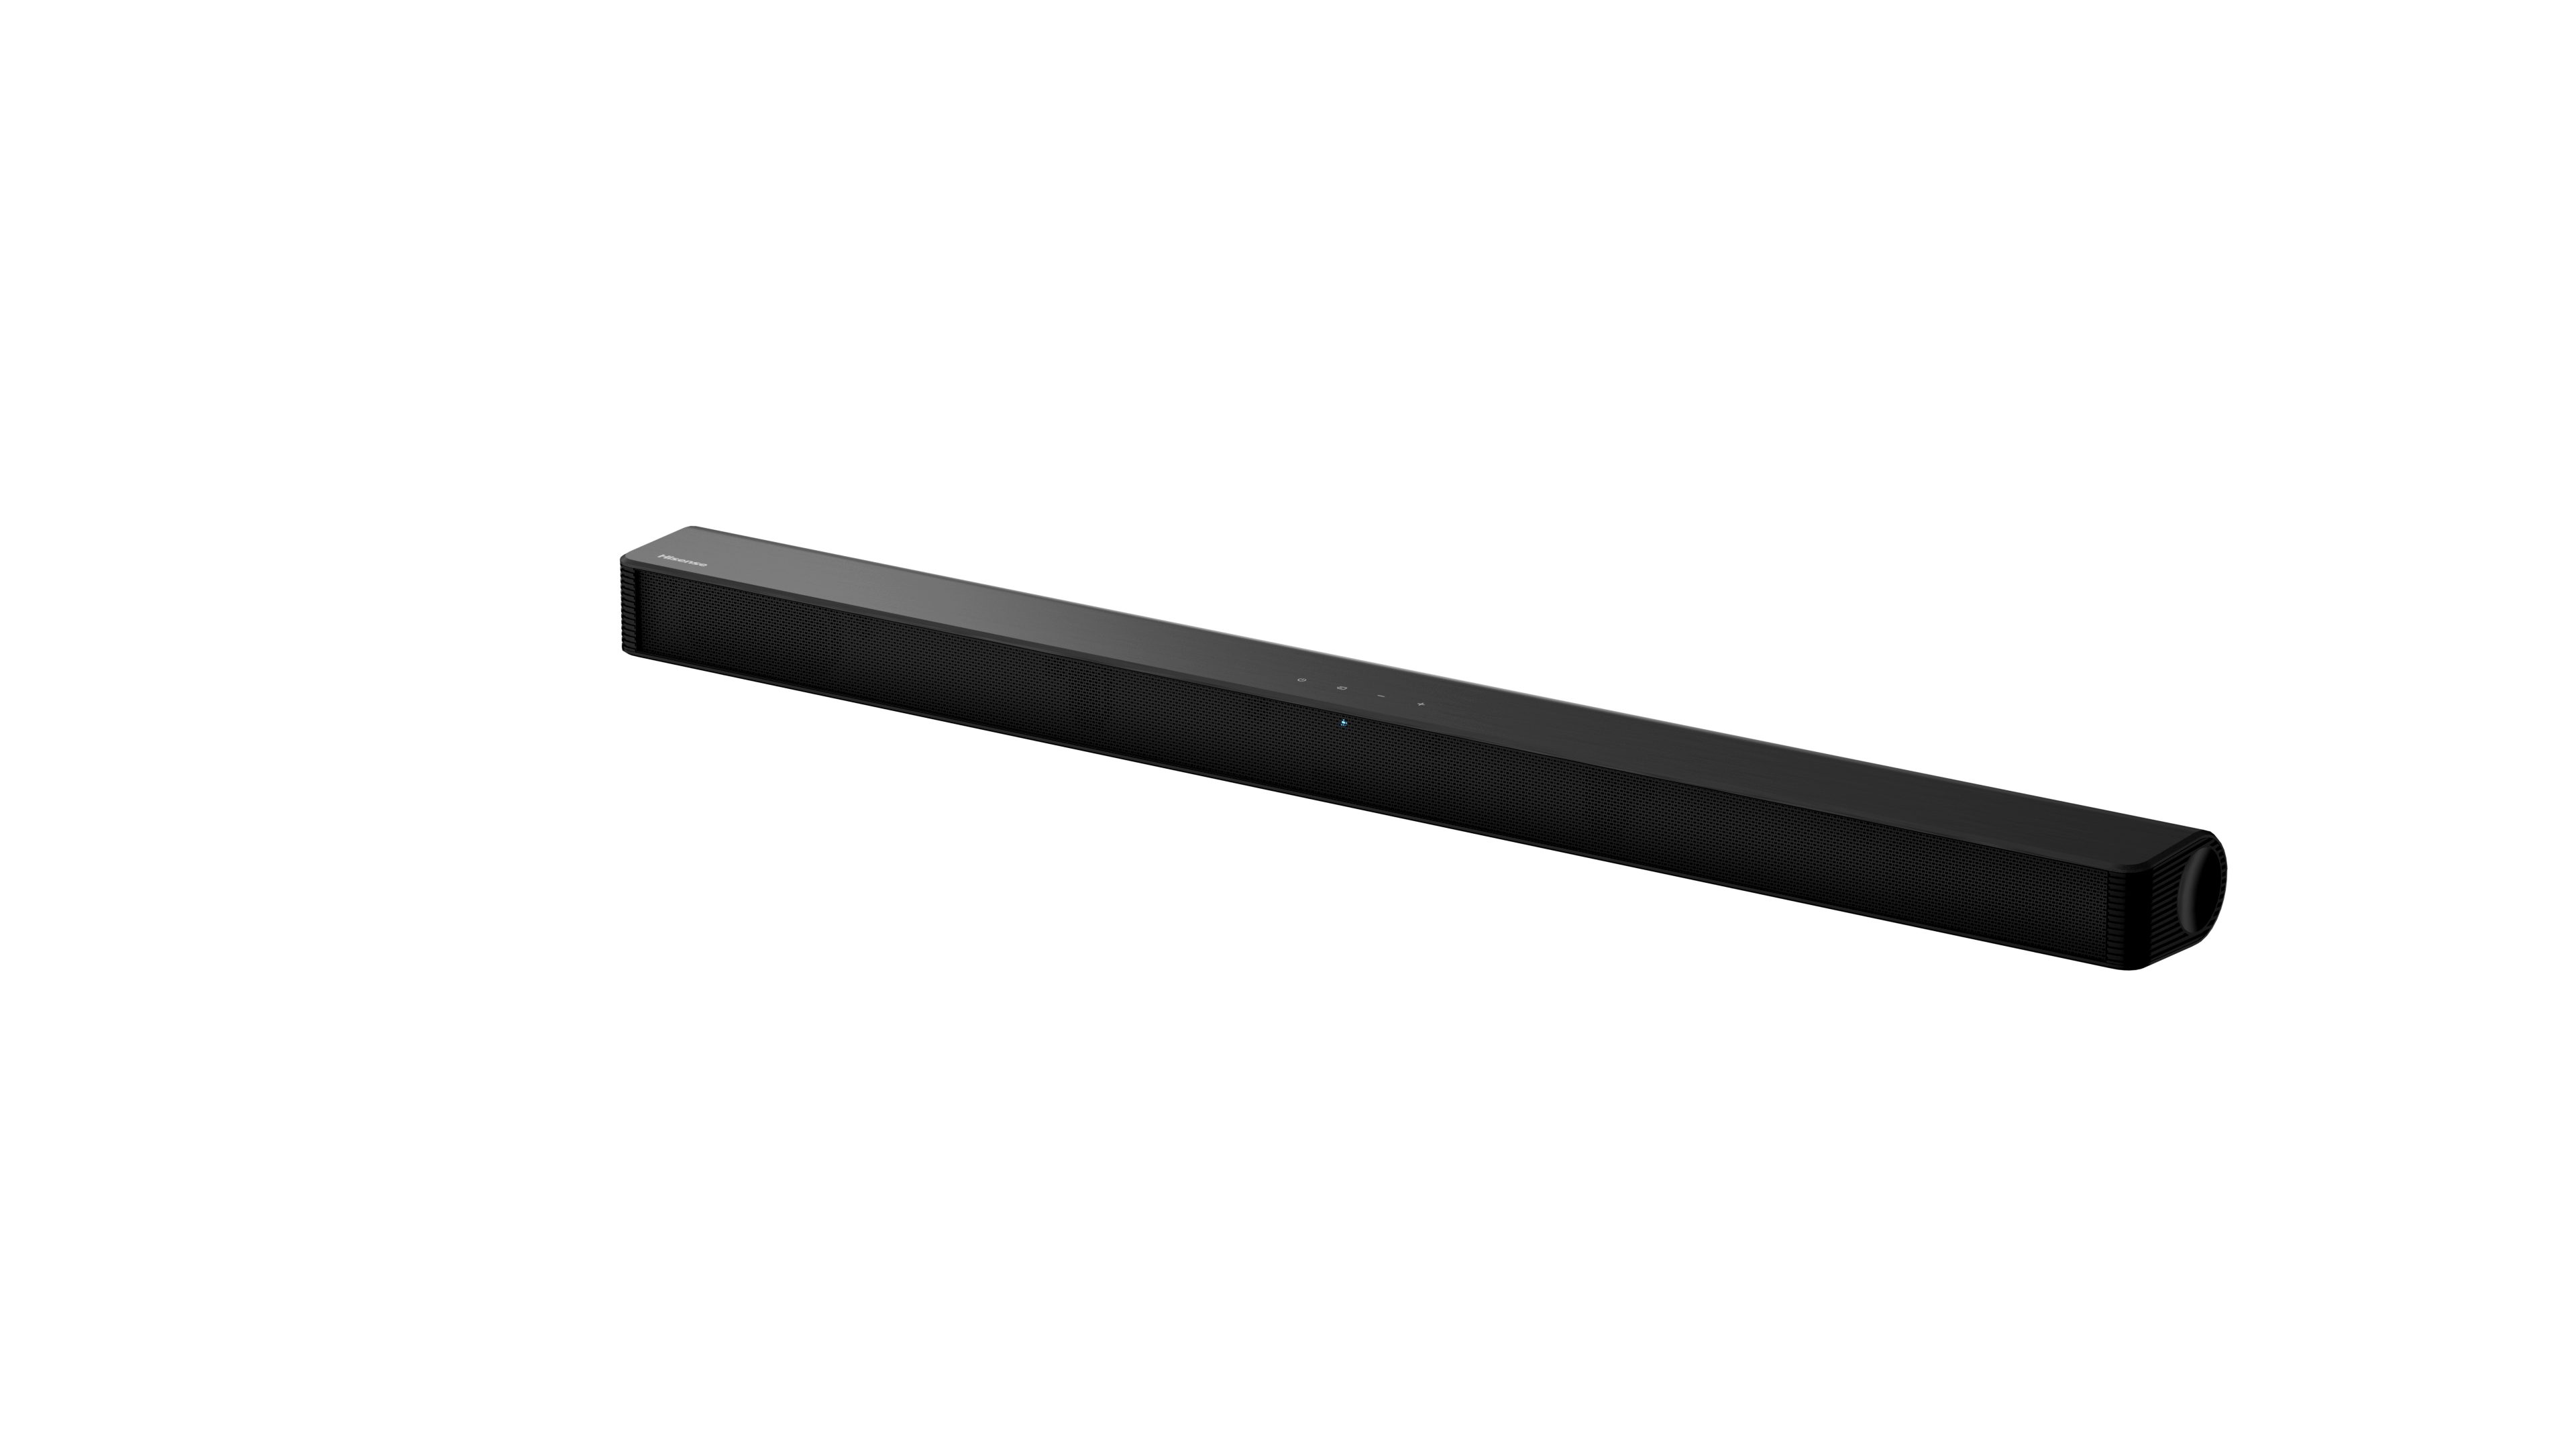 Hisense HS205G (Bluetooth, W) Watt, schwarz 2.0 Kanal 120 Soundbar 120 2.0 Soundbar